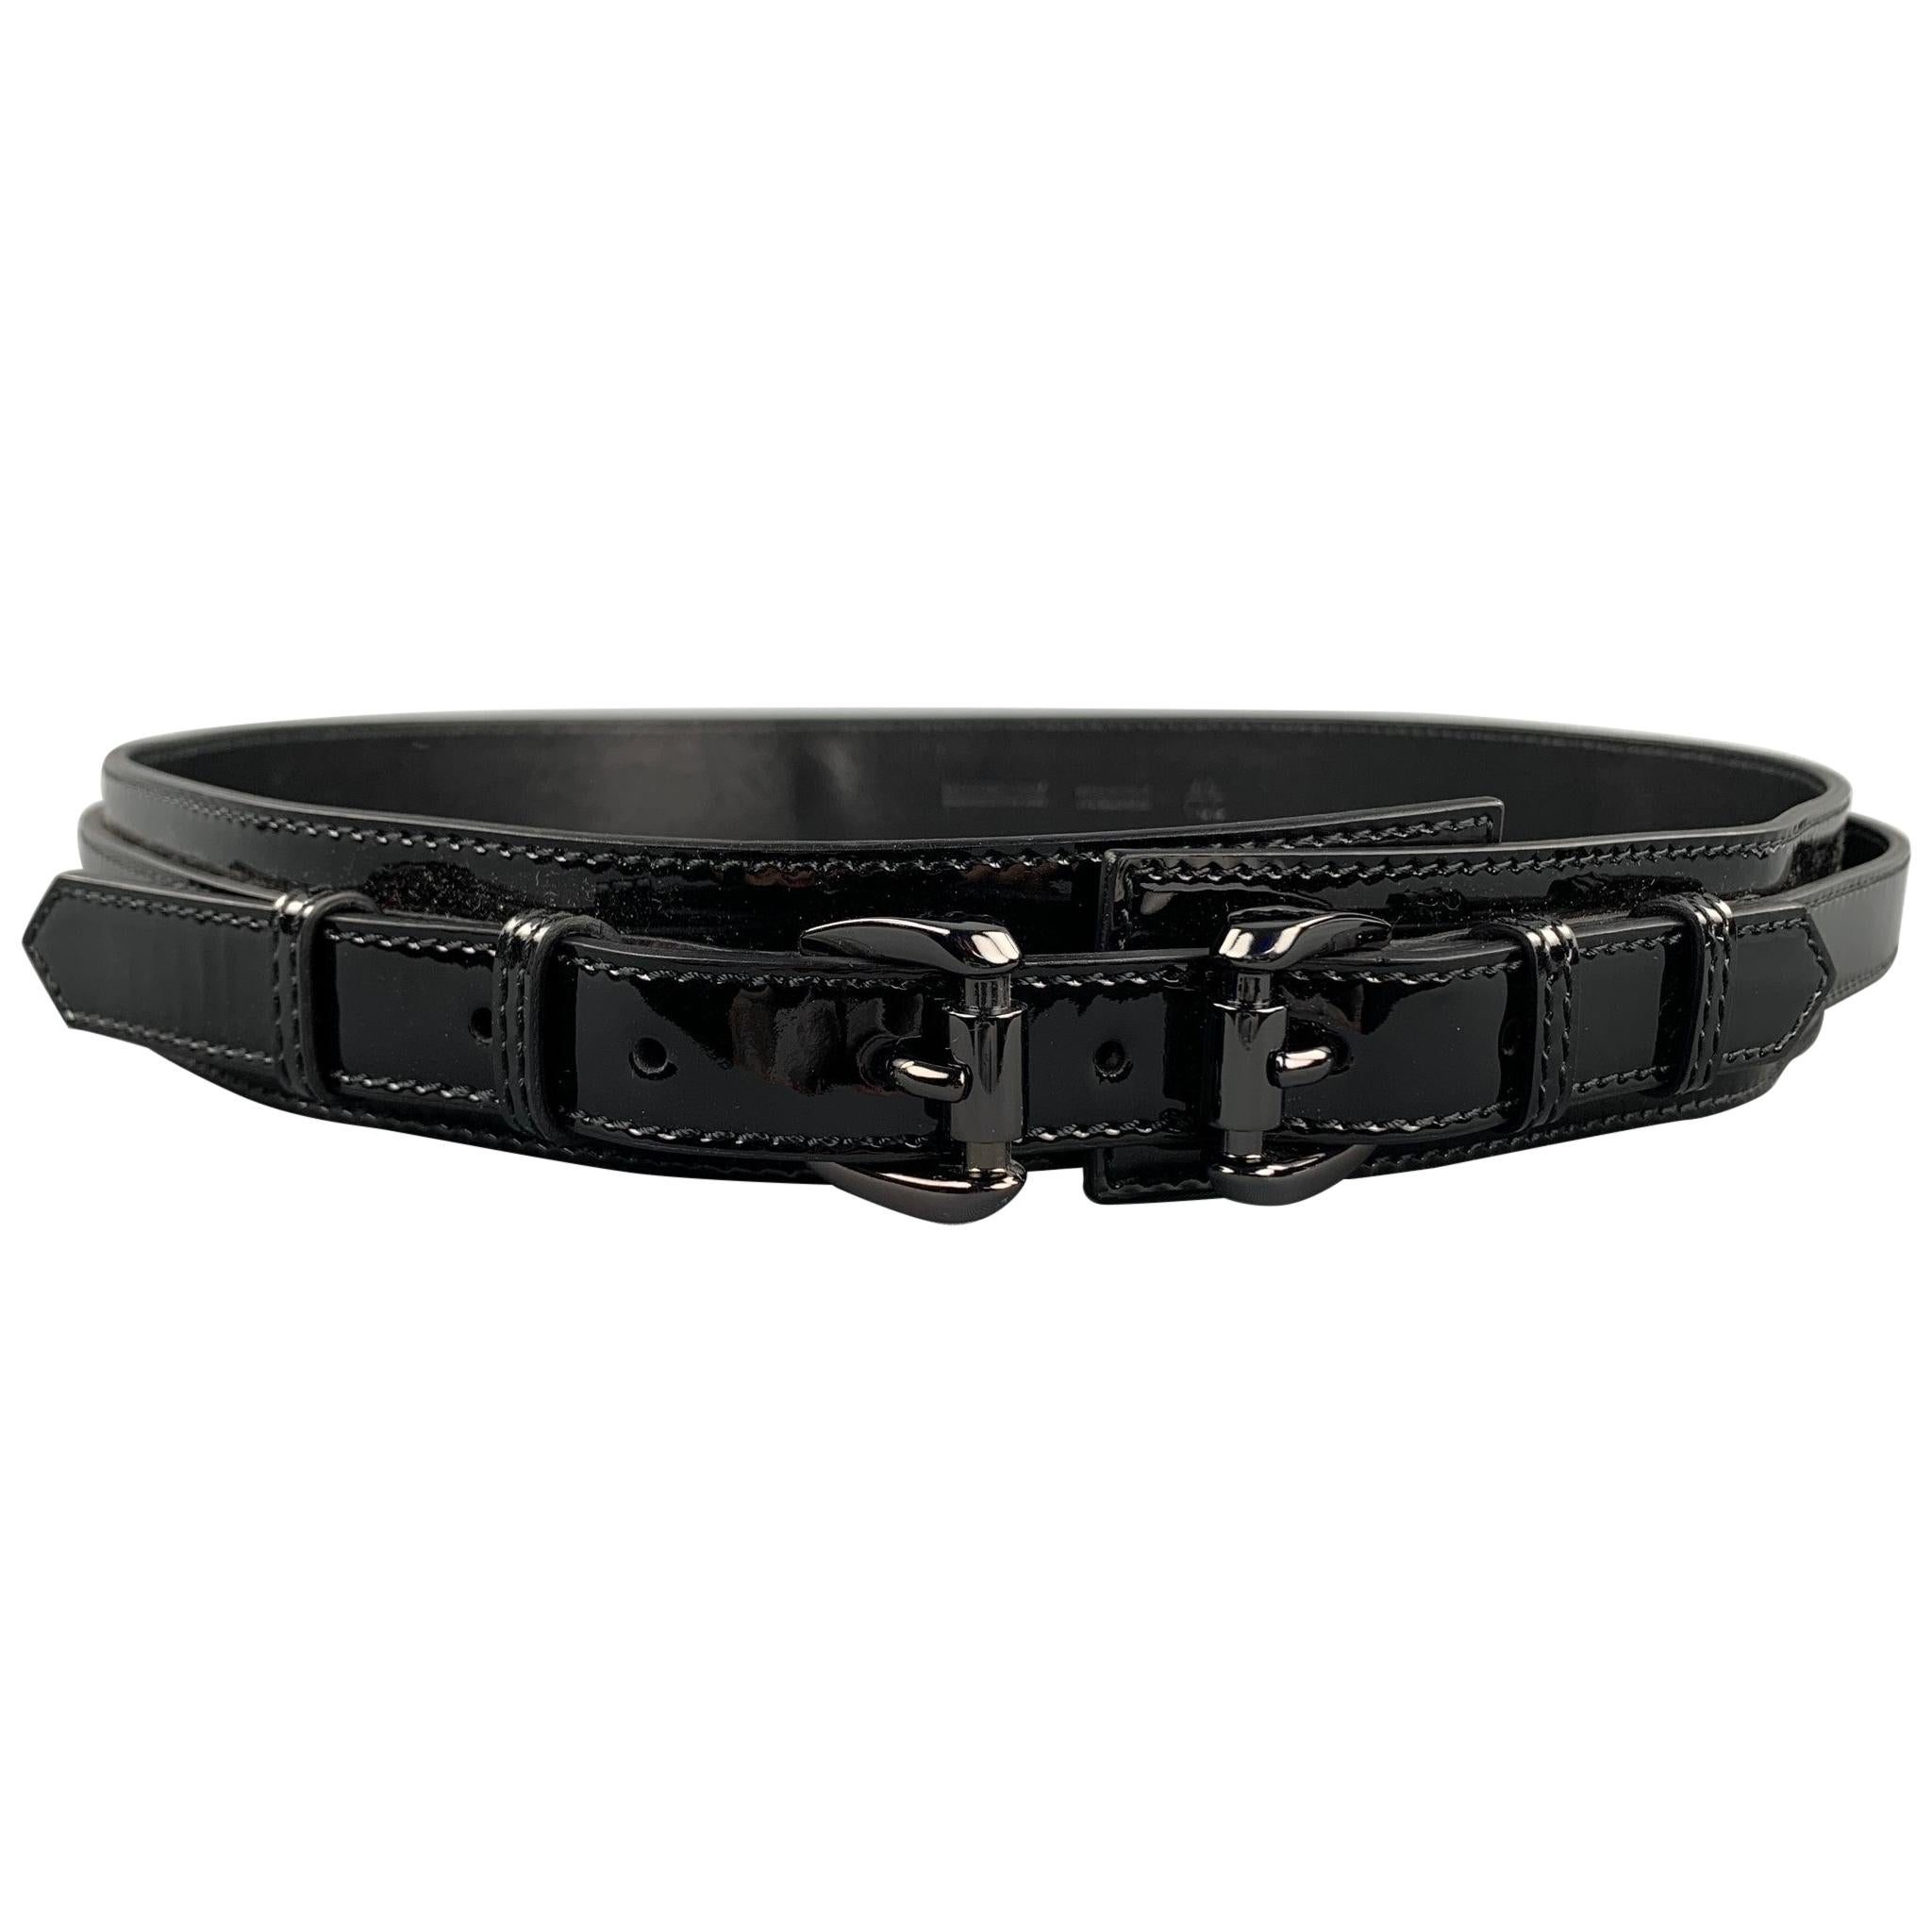 BURBERRY PRORSUM Waist Size 40 Black Patent Leather Double Strap Belt